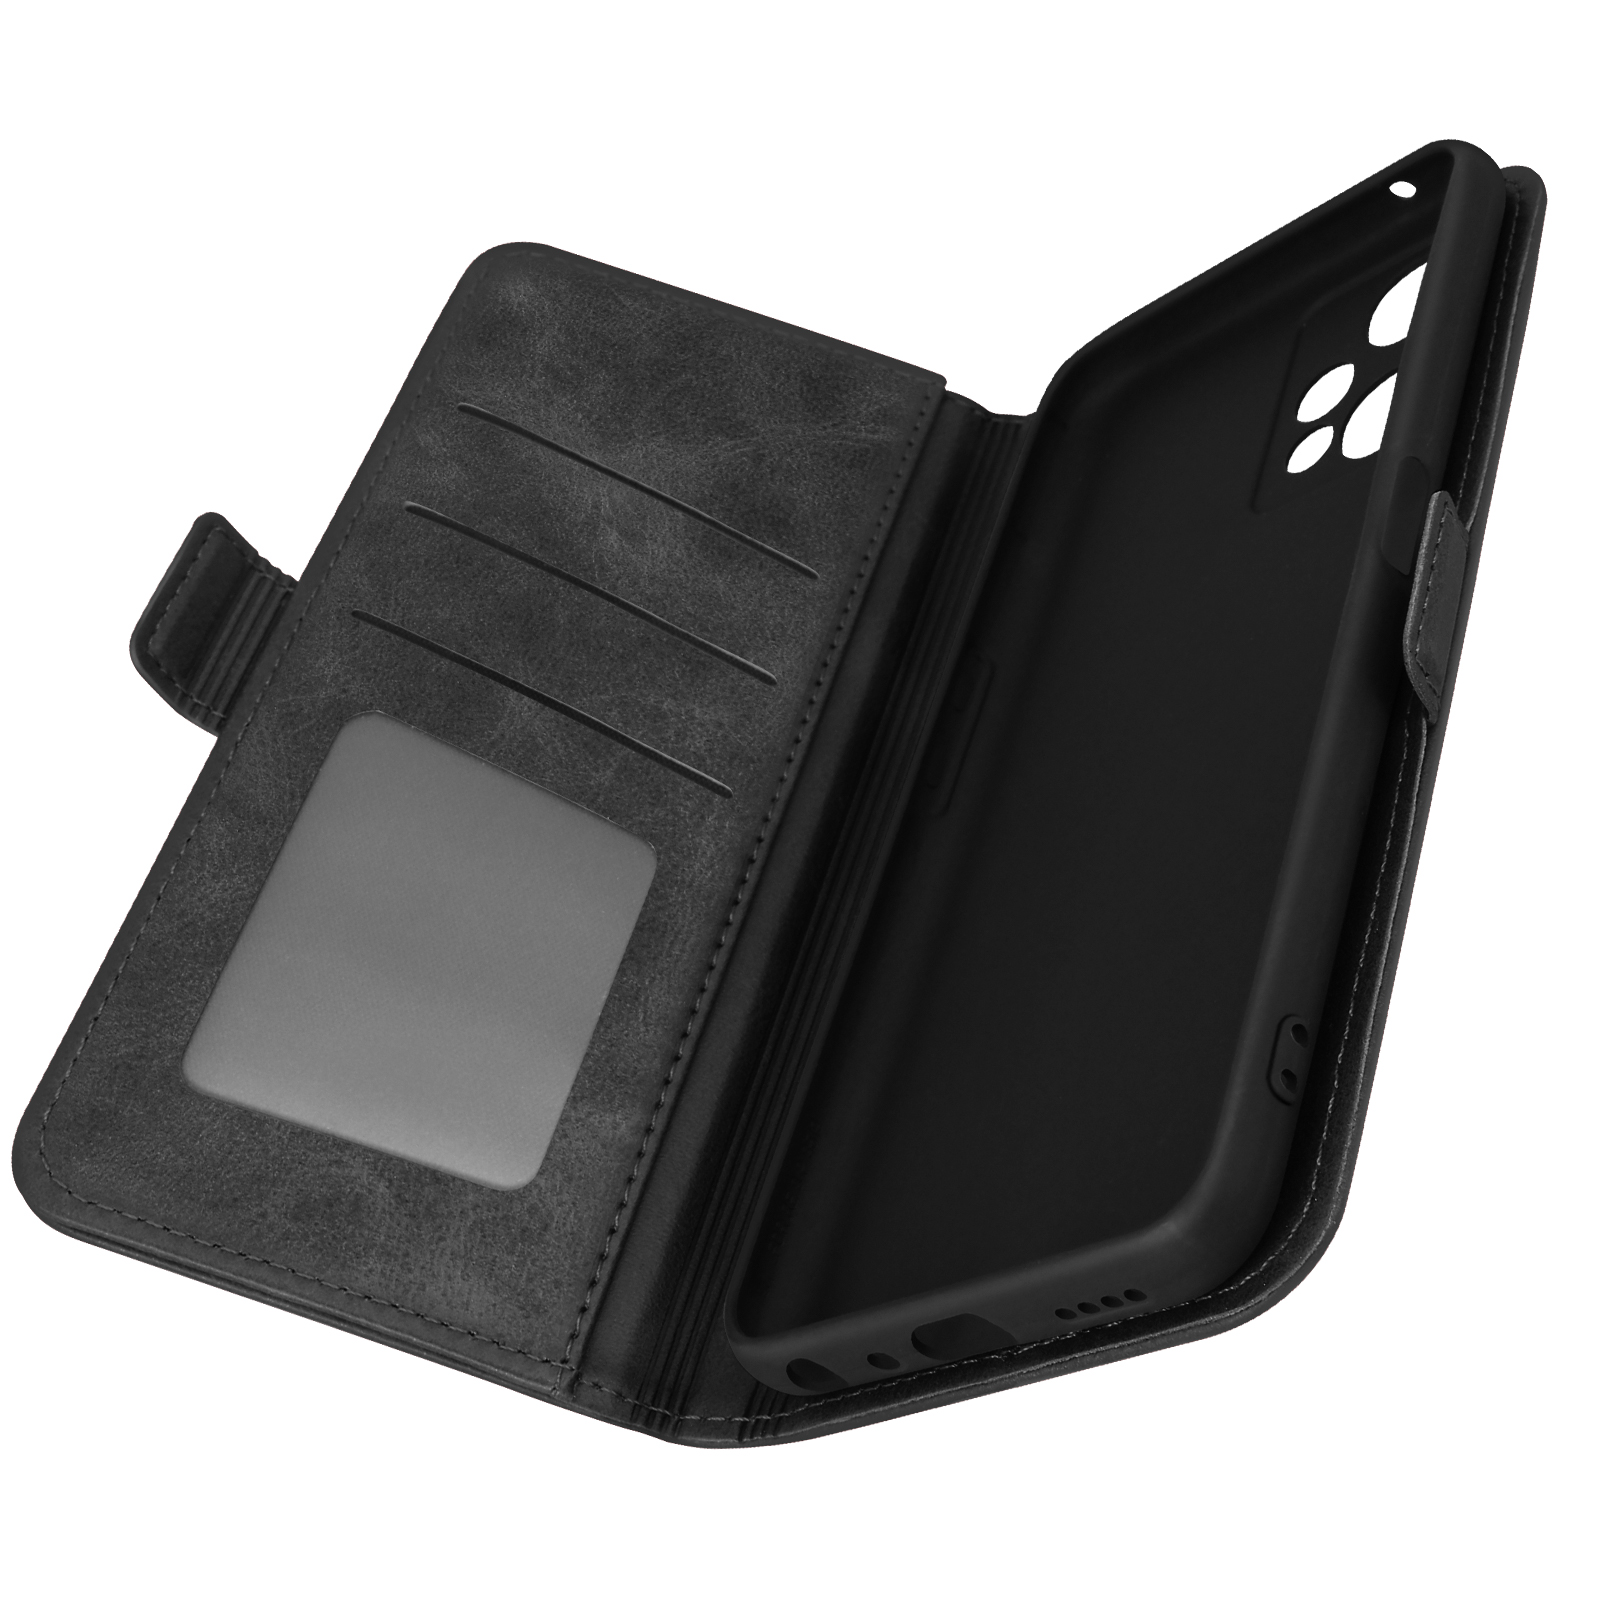 AVIZAR Klappetui mit Magnetverschluss Series, CE Nord Lite OnePlus, Schwarz Bookcover, 5G, 2